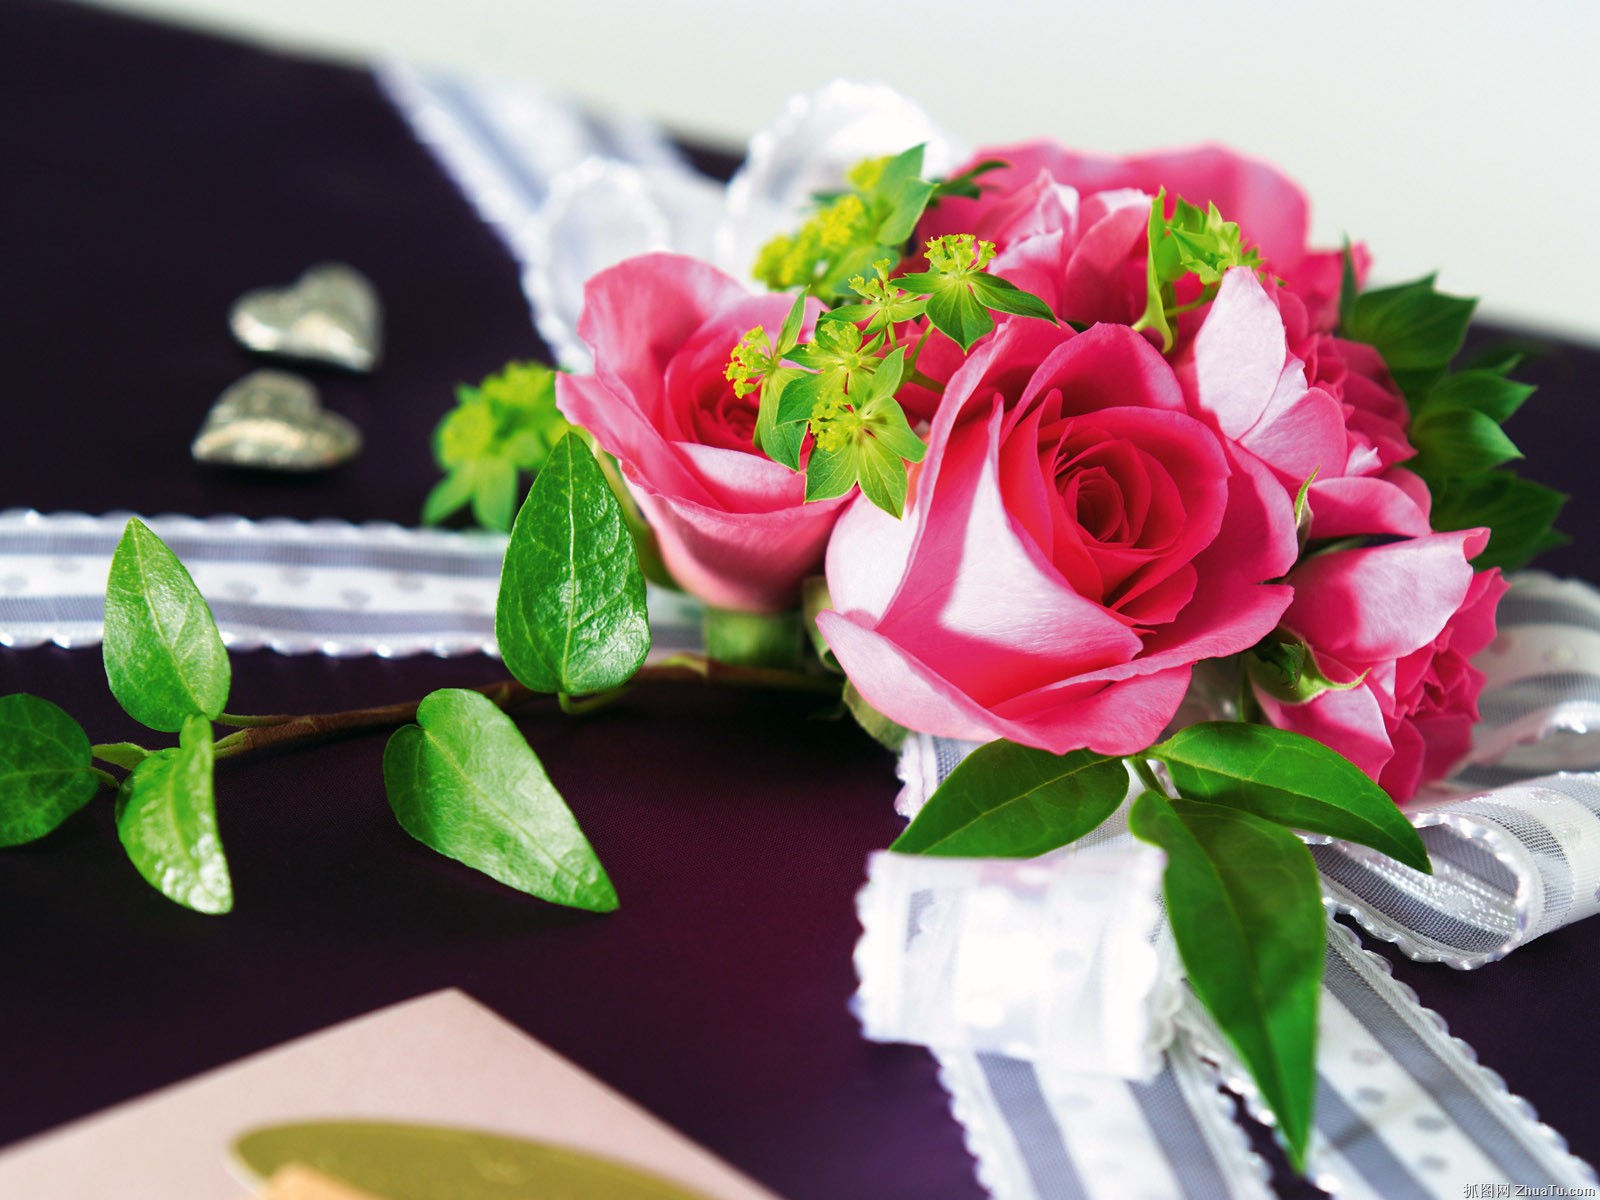 rose gift wallpaper,flower,pink,garden roses,plant,floristry